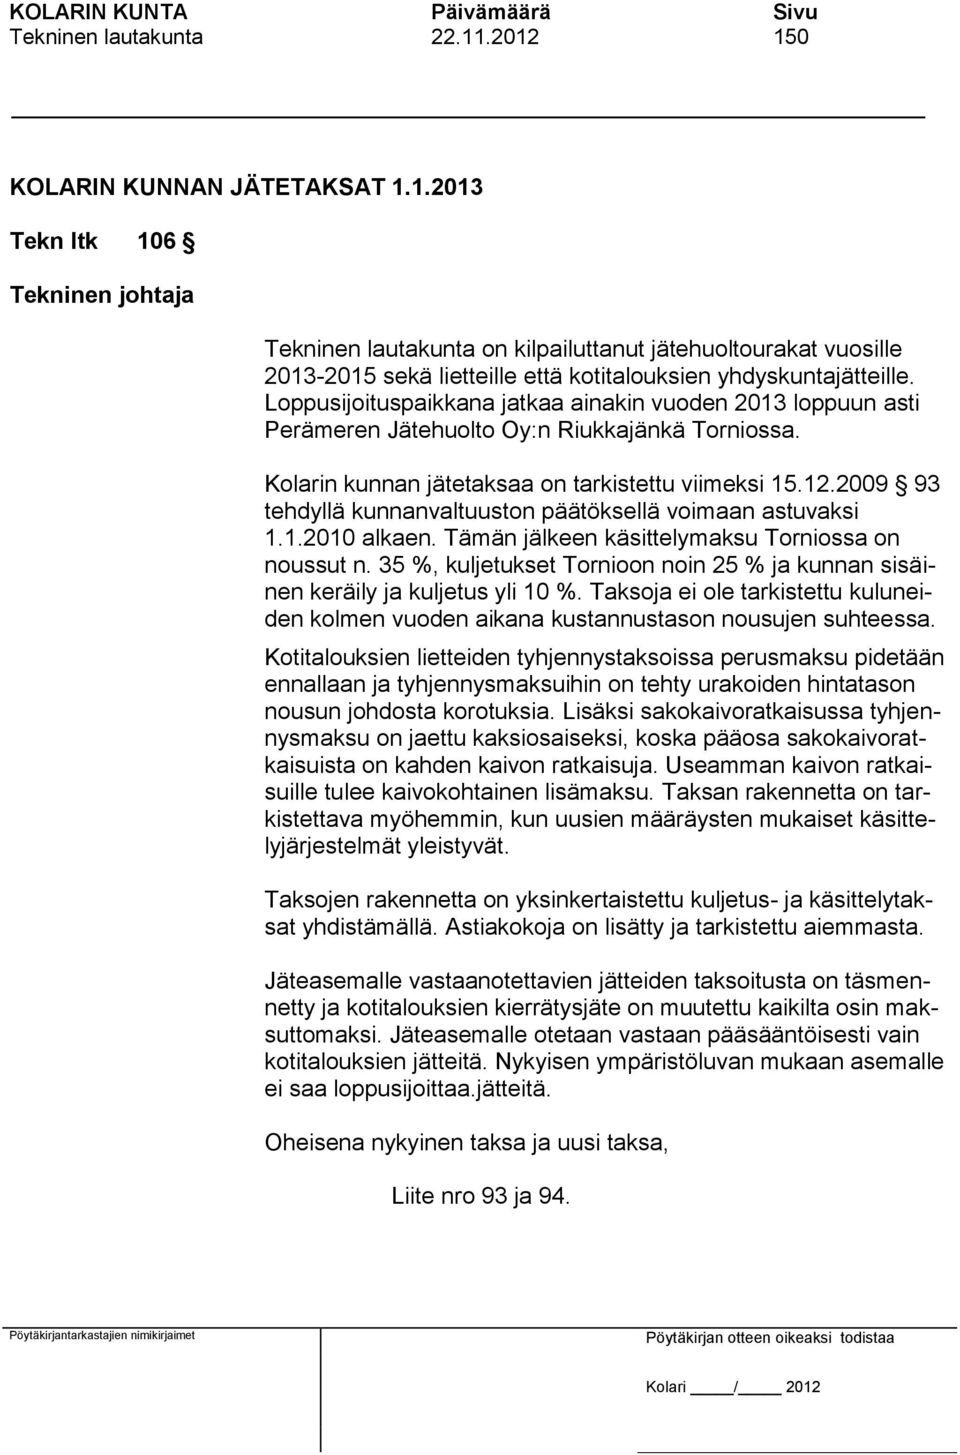 2009 93 tehdyllä kunnanvaltuuston päätöksellä voimaan astuvaksi 1.1.2010 alkaen. Tämän jälkeen käsittelymaksu Torniossa on noussut n.